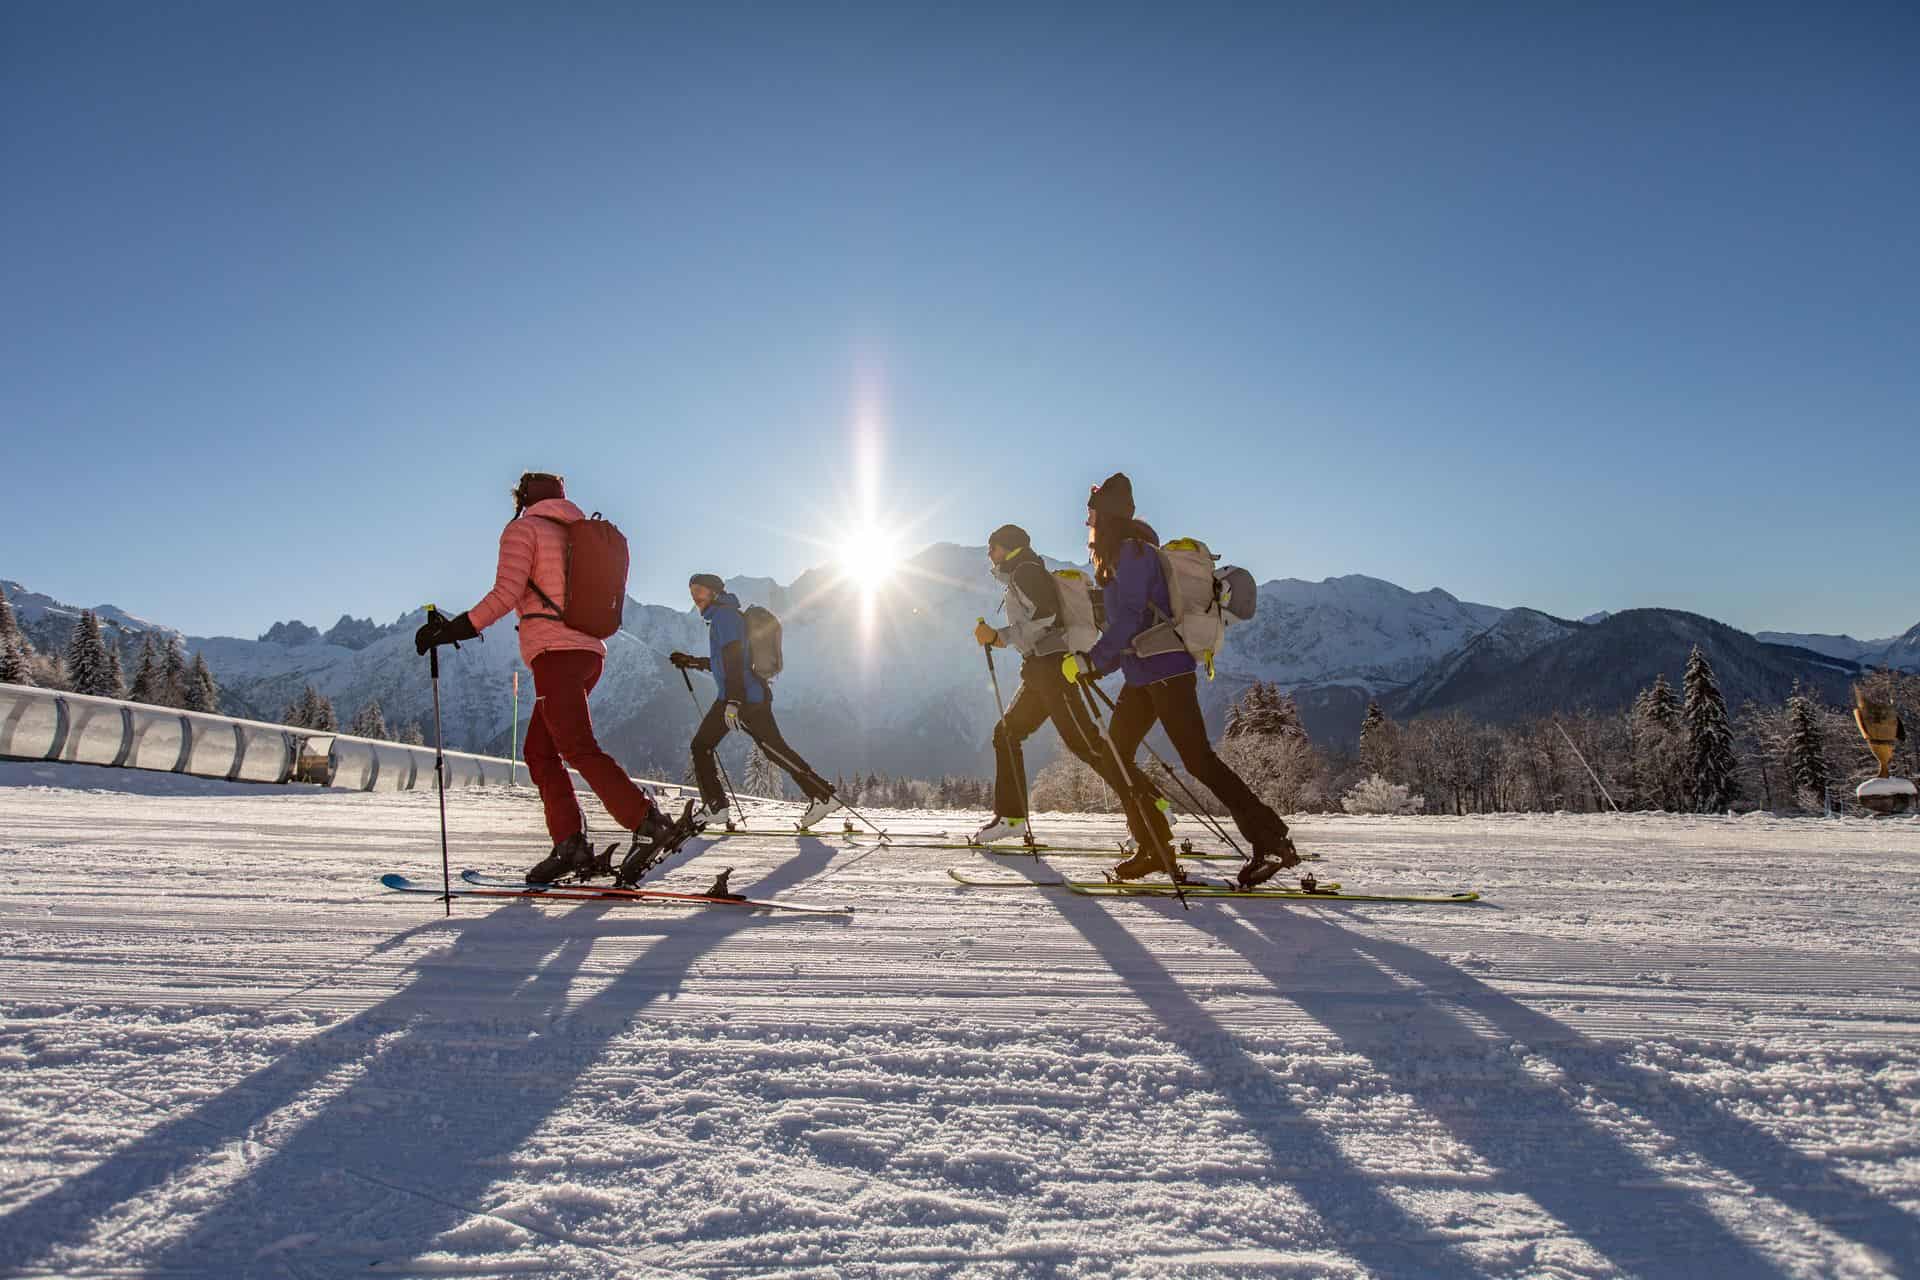 Narciarstwo biegowe - jak zacząć przygodę z nartami biegowymi?